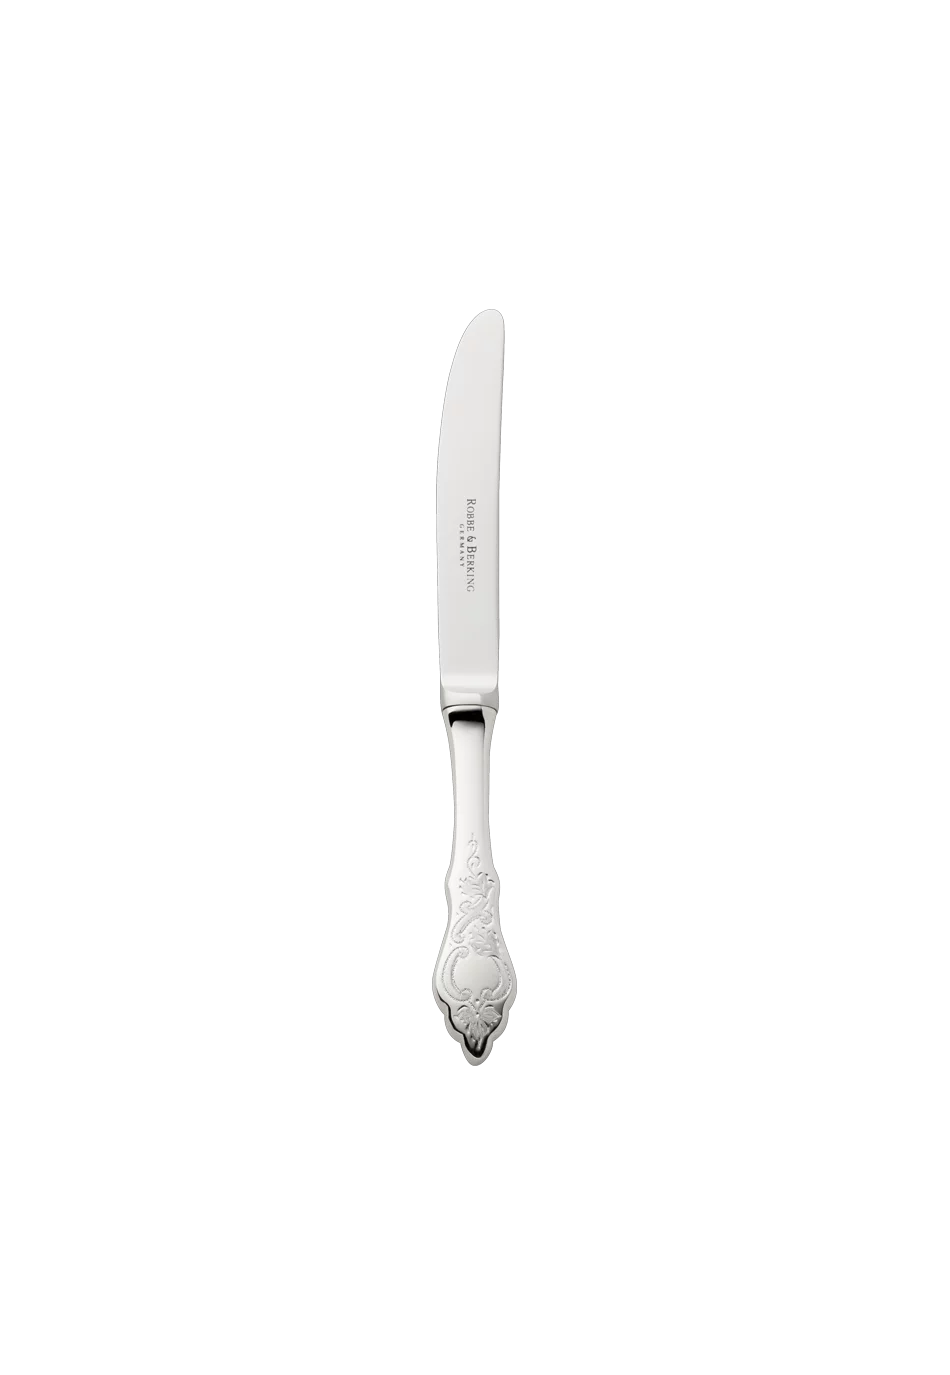 Ostfriesen Cake Knife / Fruit Knife (18/8 stainless steel)